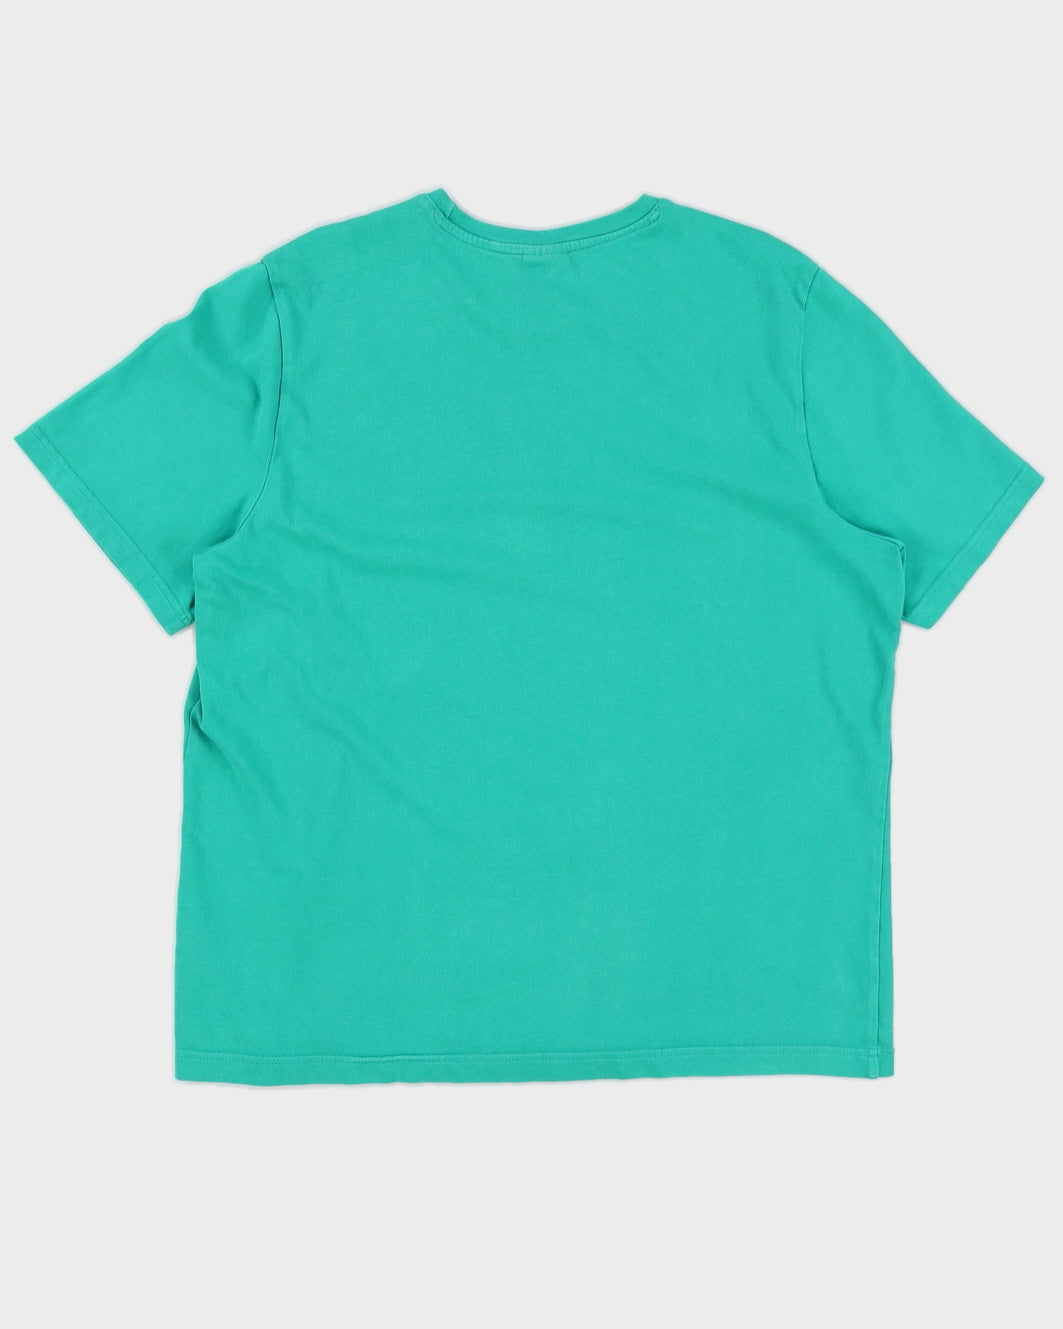 Reebok Men's Green Logo T-Shirt - XL